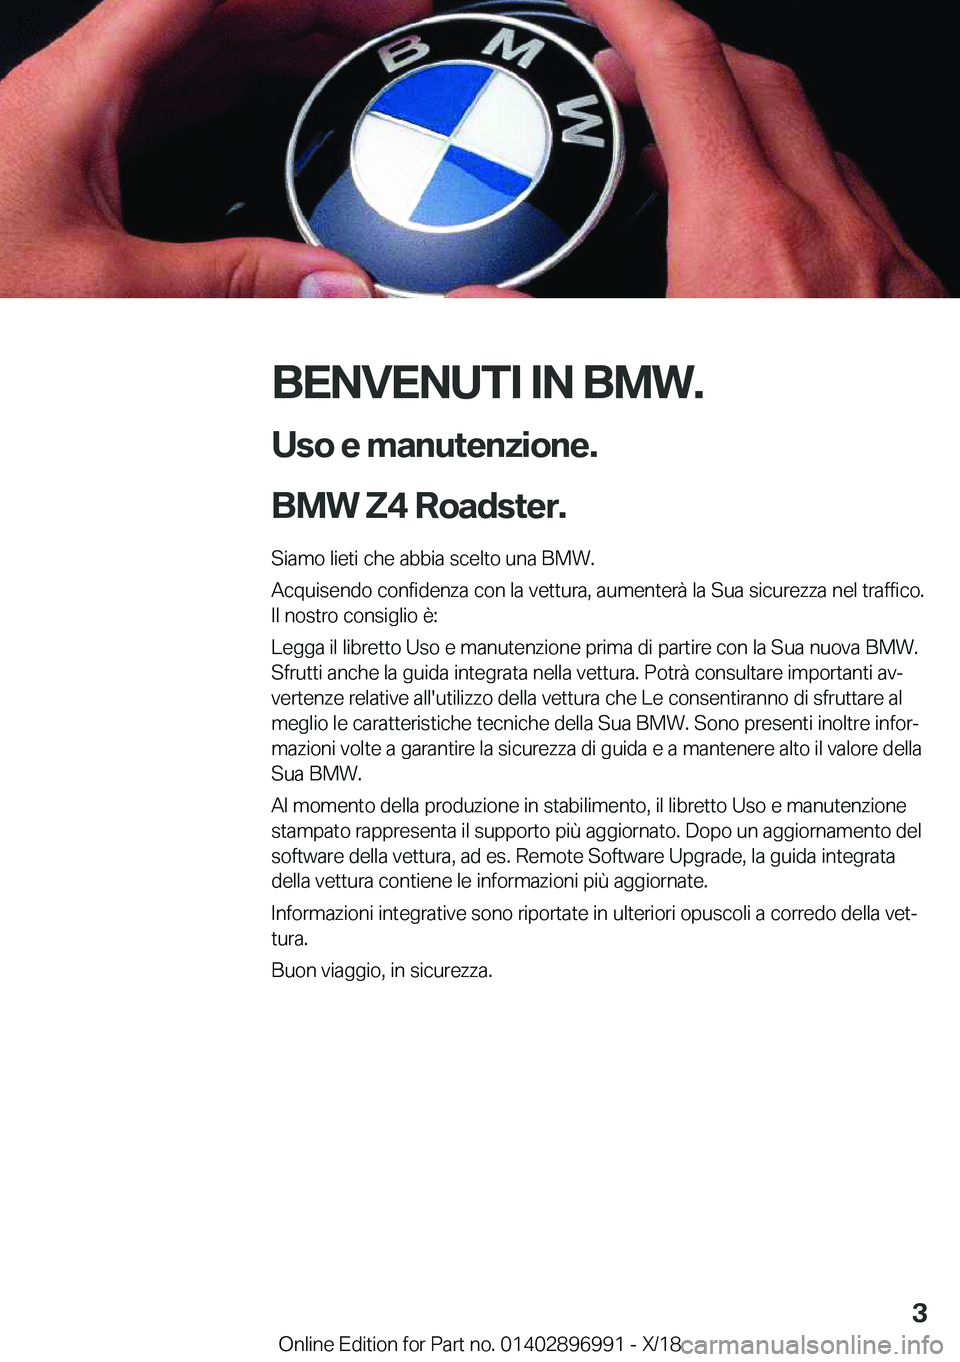 BMW Z4 2019  Libretti Di Uso E manutenzione (in Italian) �B�E�N�V�E�N�U�T�I��I�N��B�M�W�.�U�s�o��e��m�a�n�u�t�e�n�z�i�o�n�e�.
�B�M�W��Z�4��R�o�a�d�s�t�e�r�.
�S�i�a�m�o��l�i�e�t�i��c�h�e��a�b�b�i�a��s�c�e�l�t�o��u�n�a��B�M�W�.
�A�c�q�u�i�s�e�n�d�